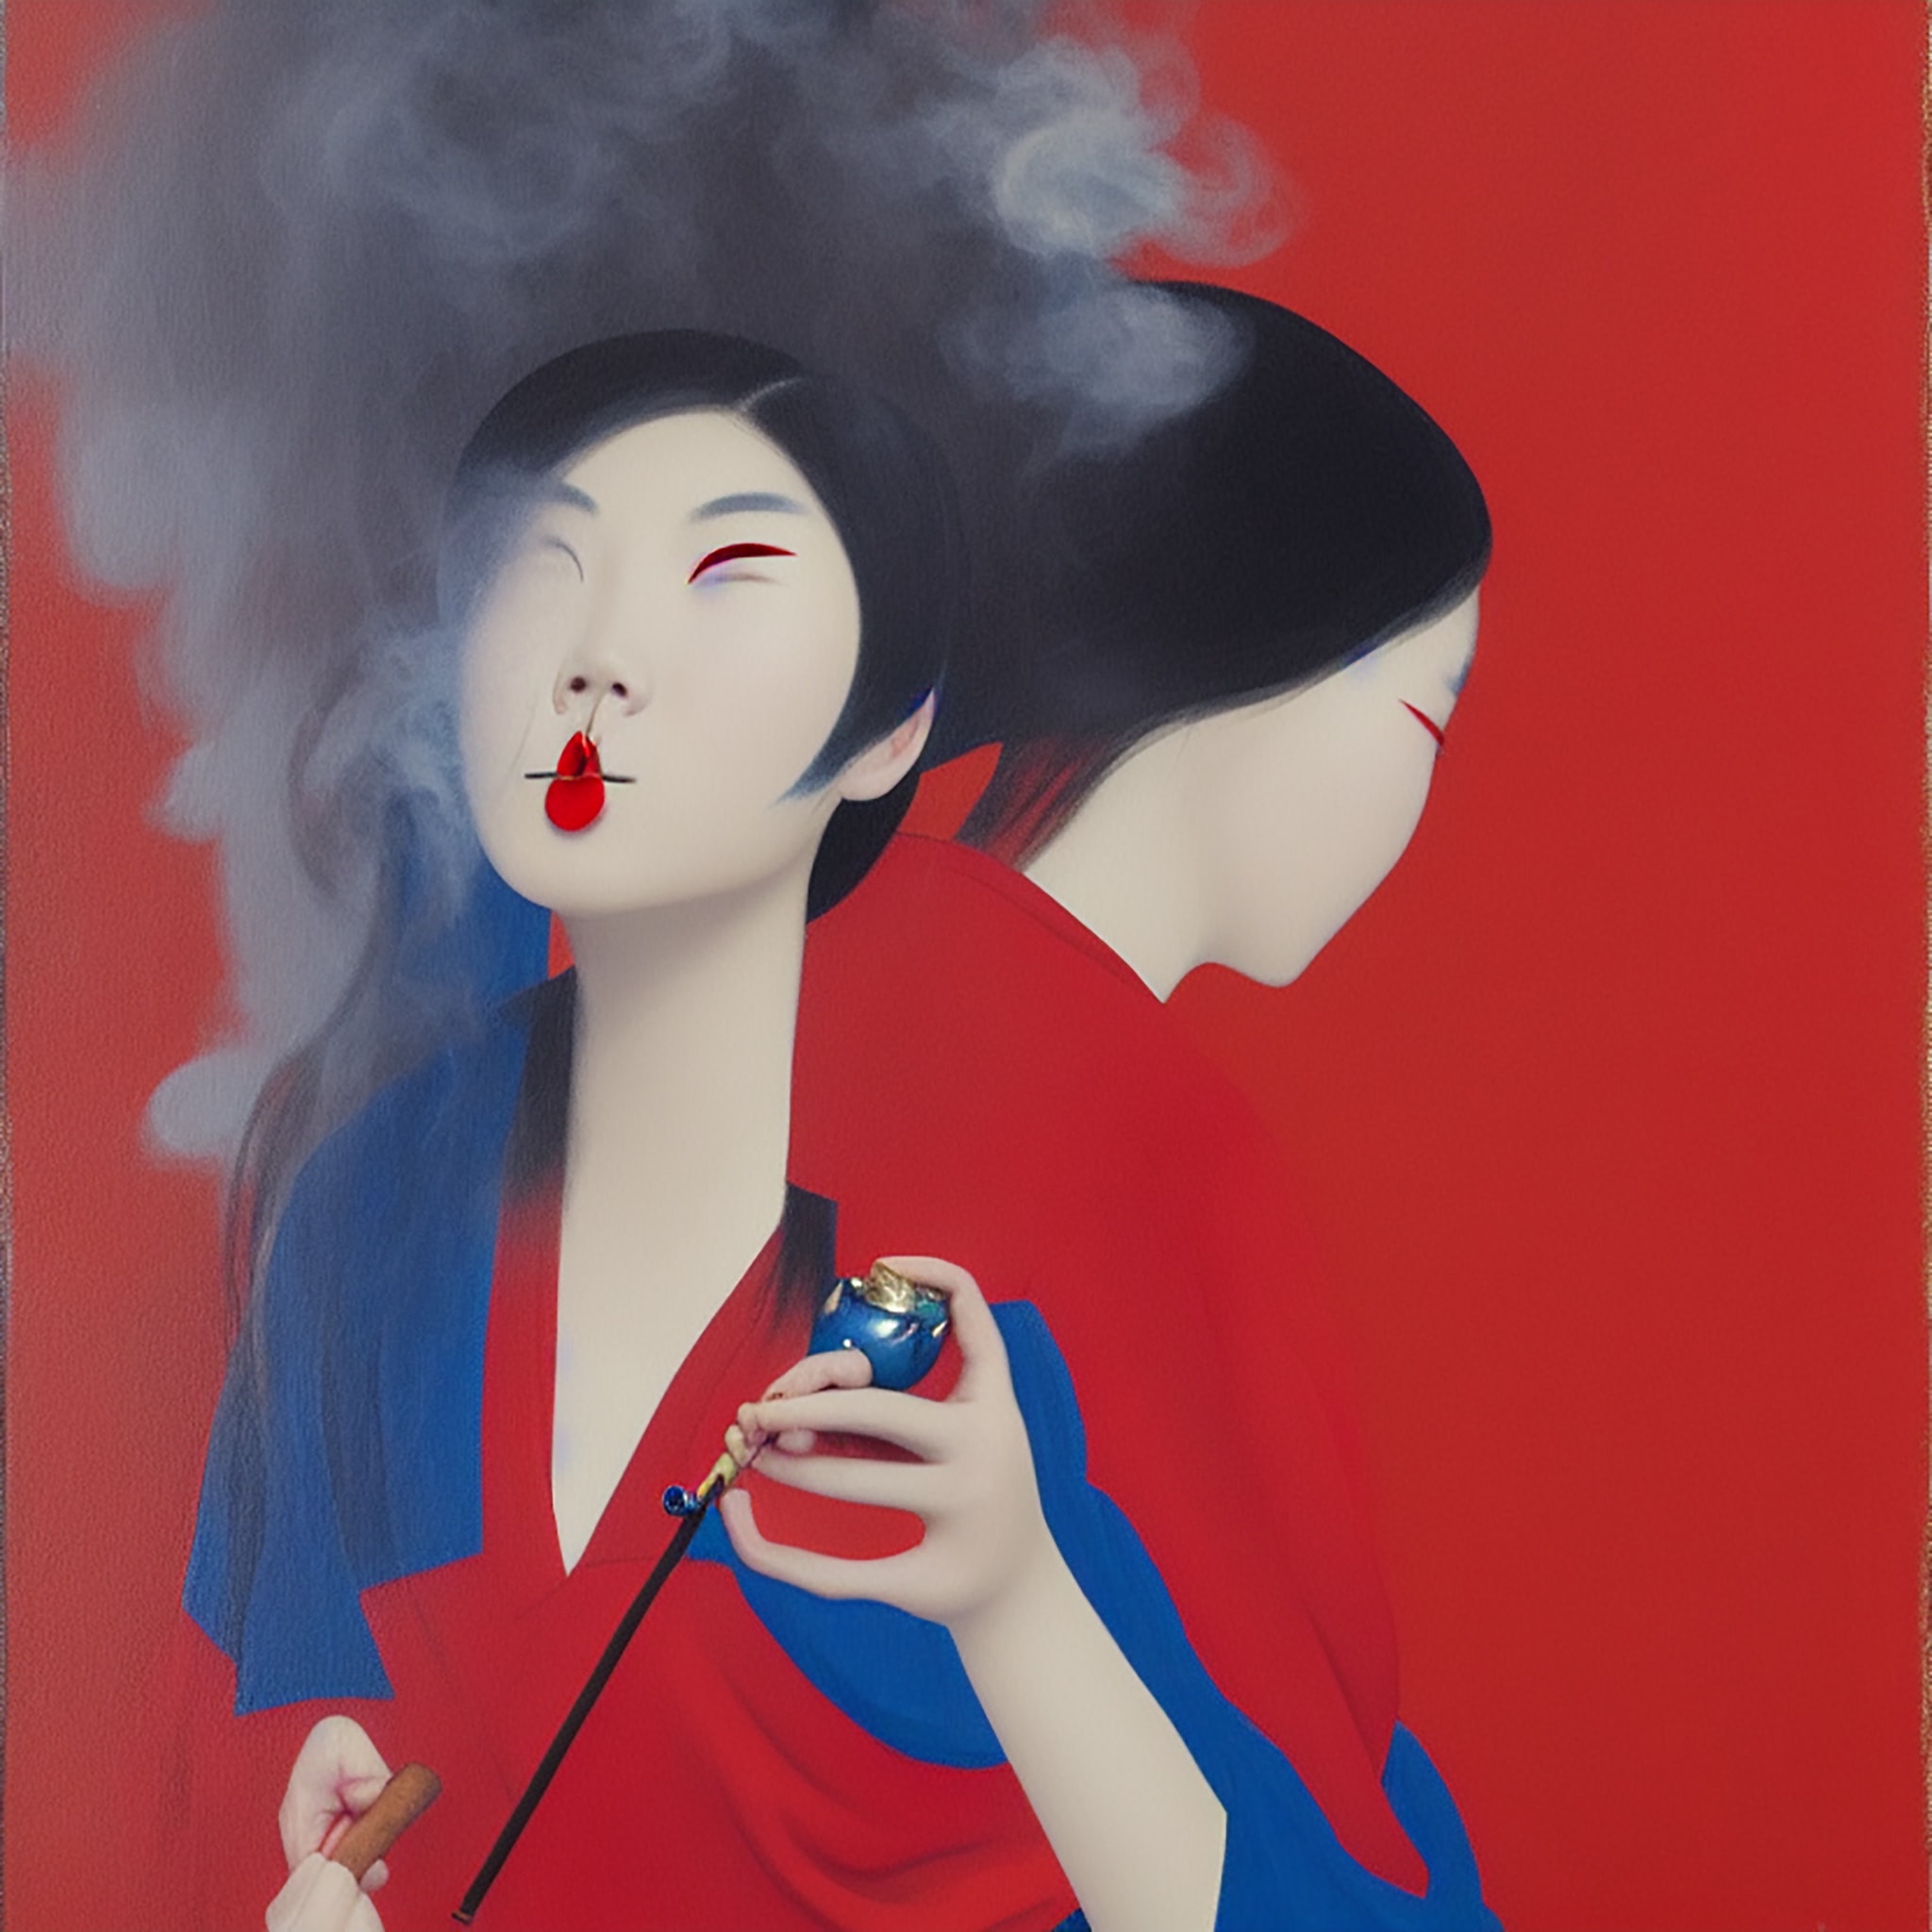 Painting Of Chinese Girl Smoking Pipe 2 • Viarami